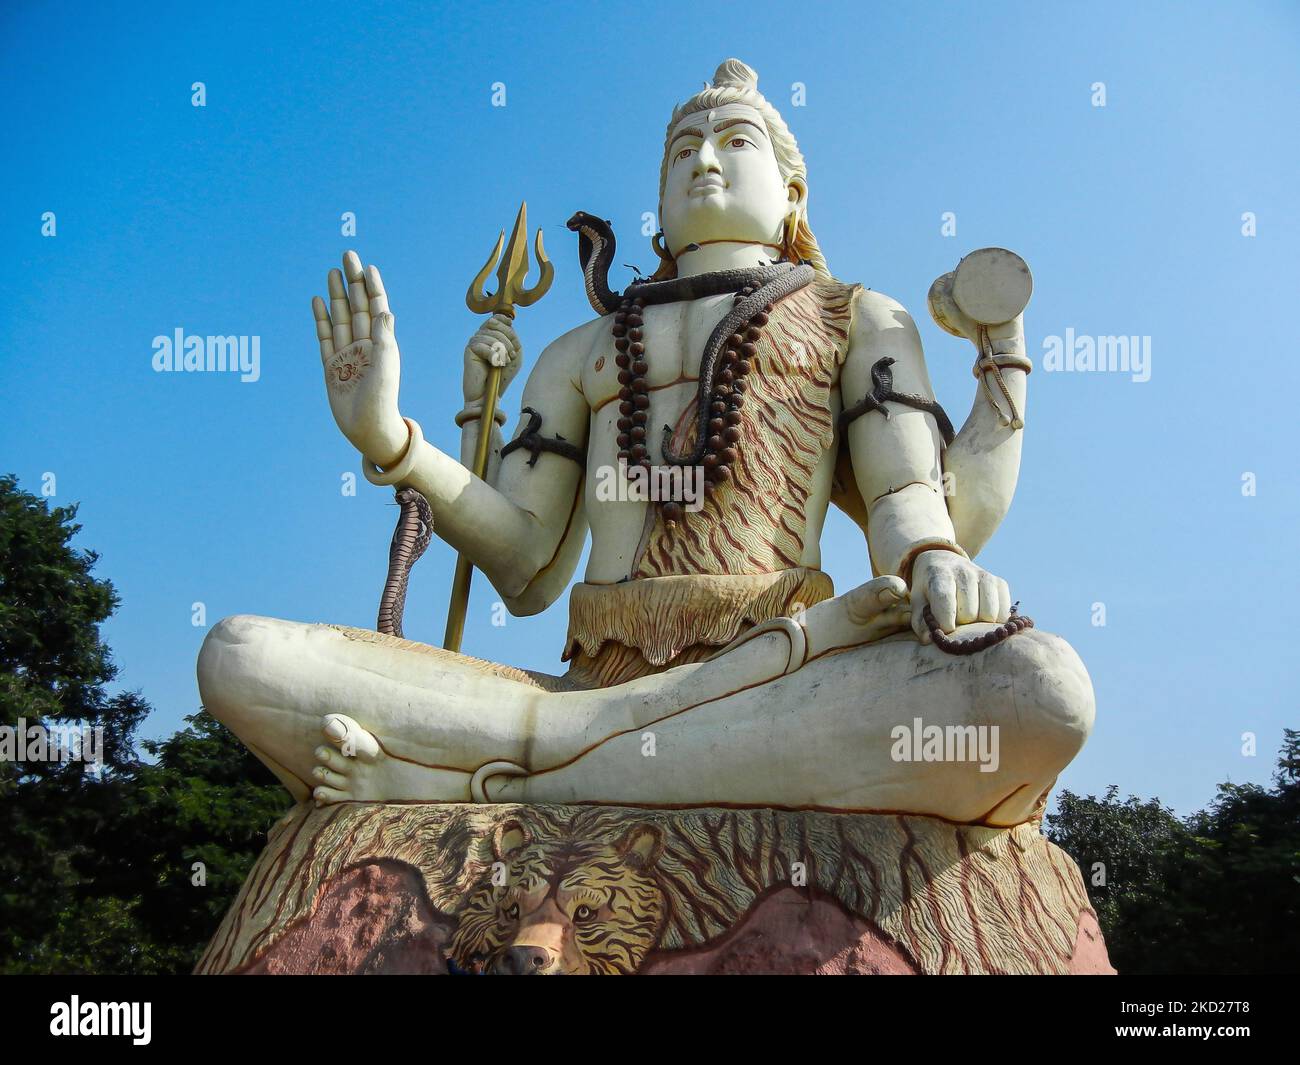 Un incredibile scatto di seduta signore Shiva statua bianca in una giornata di sole in un parco a Dwaraka, Gujarat, India Foto Stock